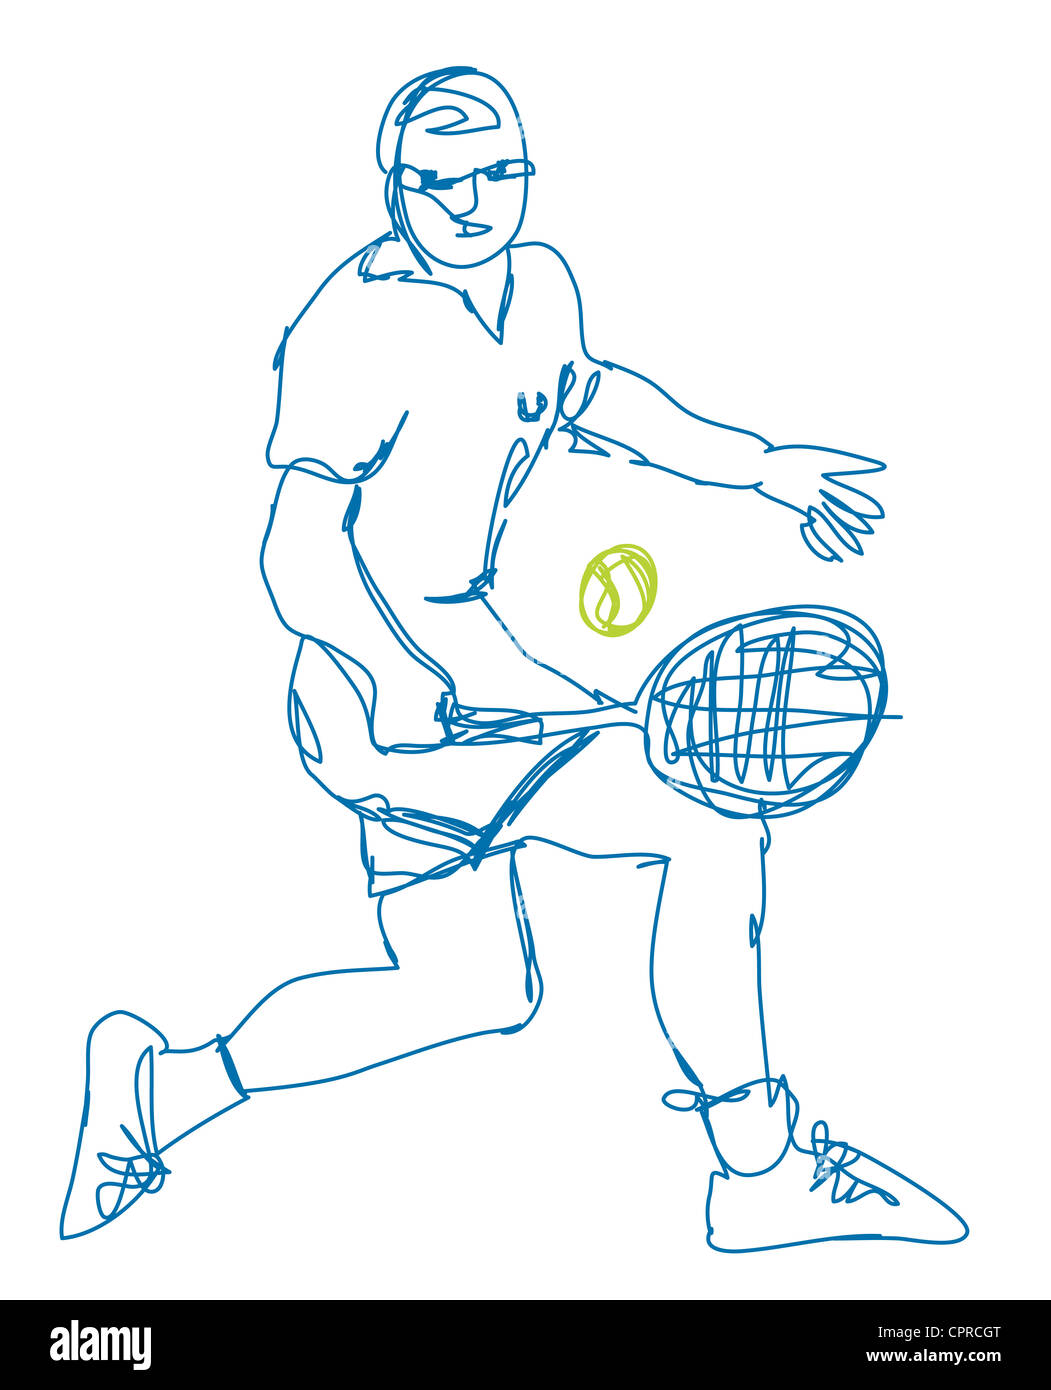 Tennisspieler mit seiner Rückhand. Stockfoto